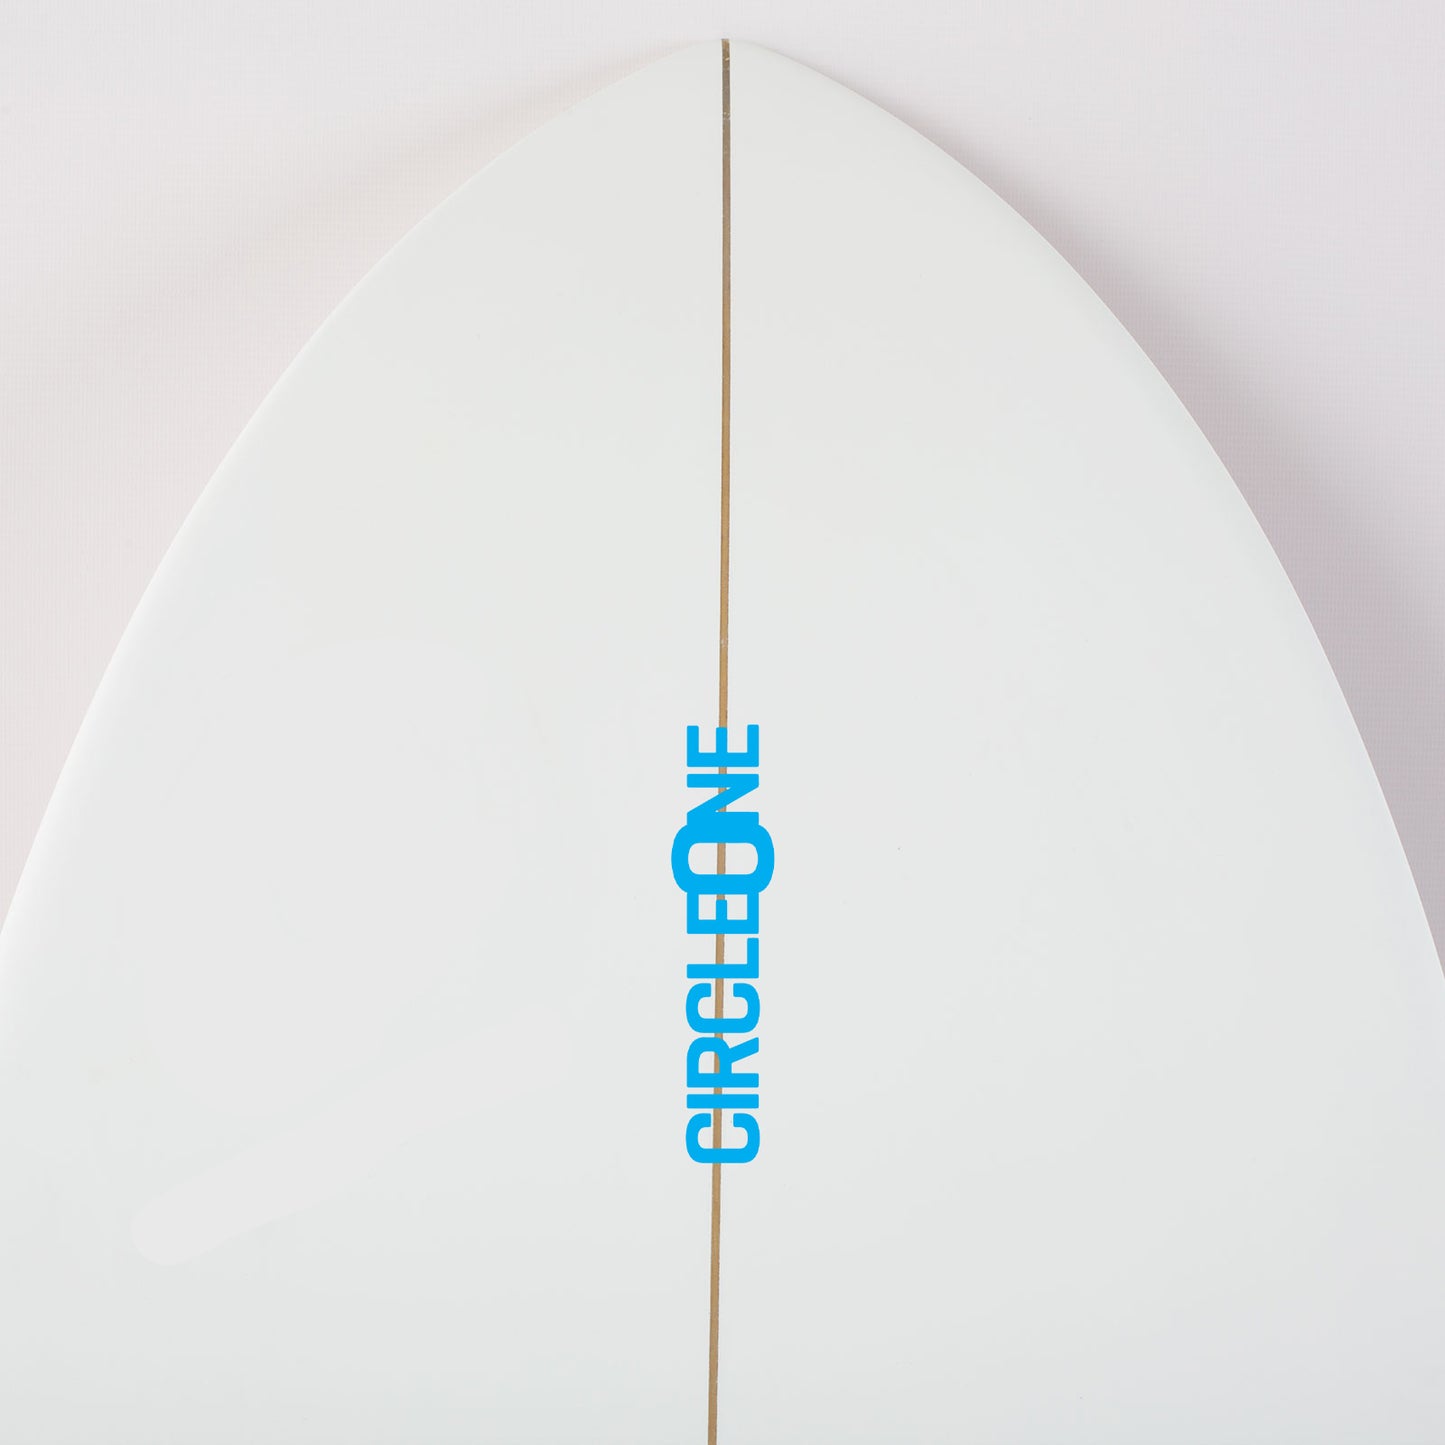 Fish Tail Surfboard – 6ft 3inch Razor Fish Tail Shortboard Surfboard